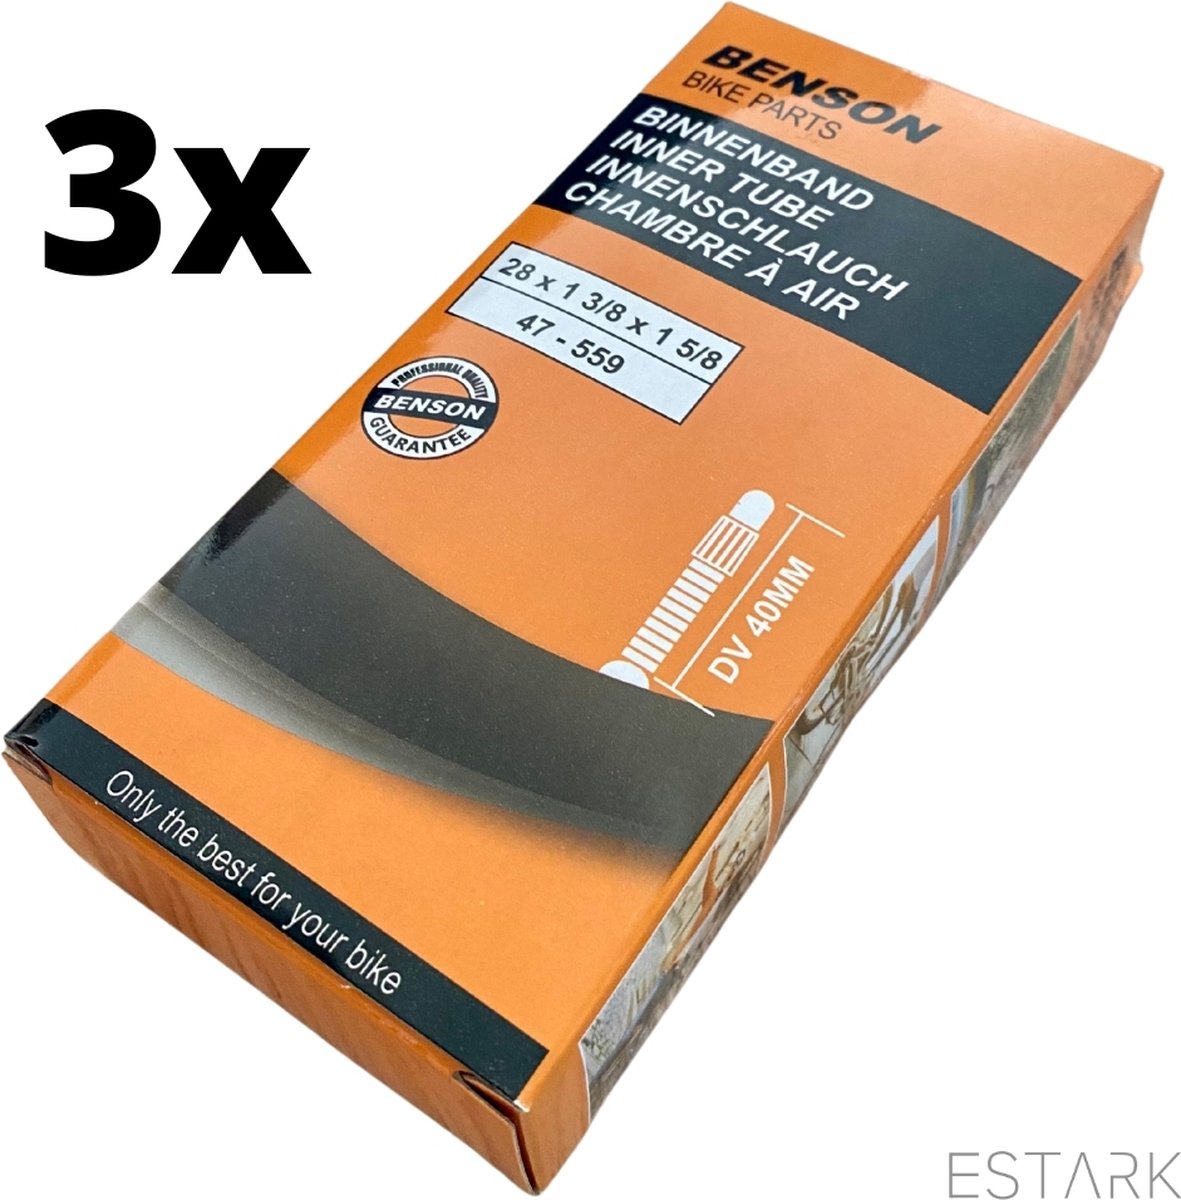 ESTARK Binnenband 28 inch Set van Drie - 3 x Binnenband 28 inch / 28